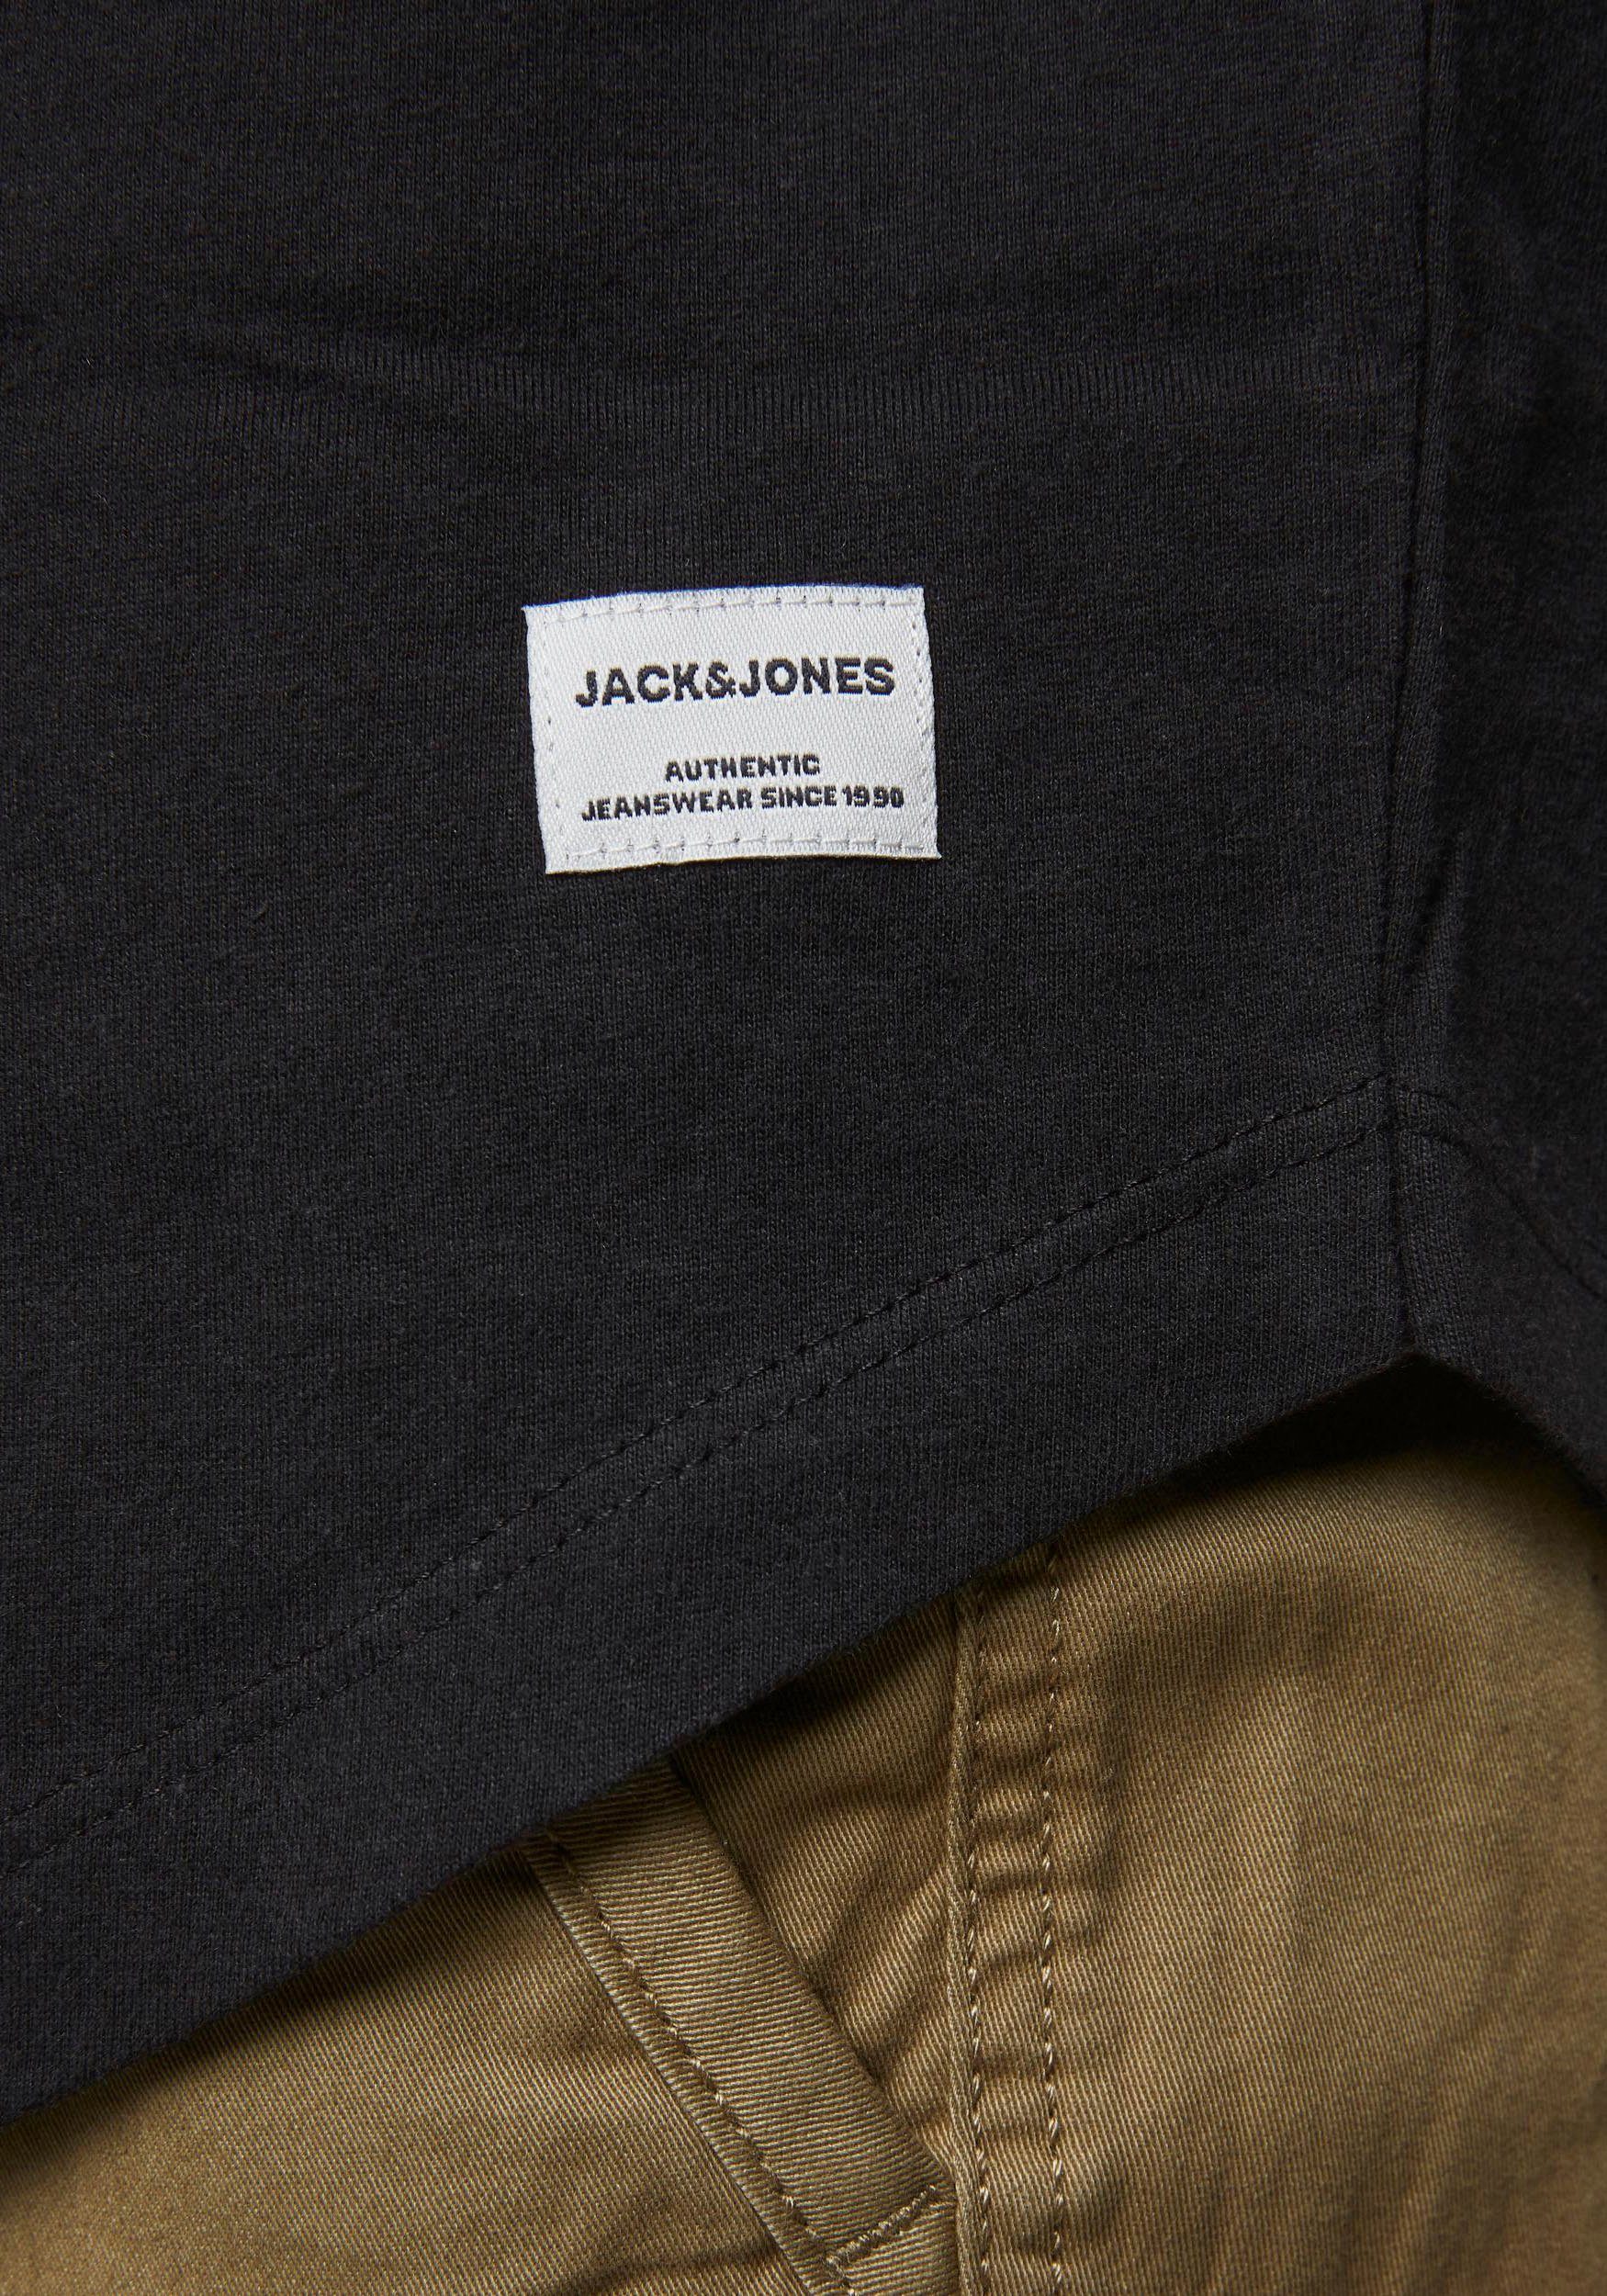 & Jones TEE Jack T-Shirt schwarz NOA